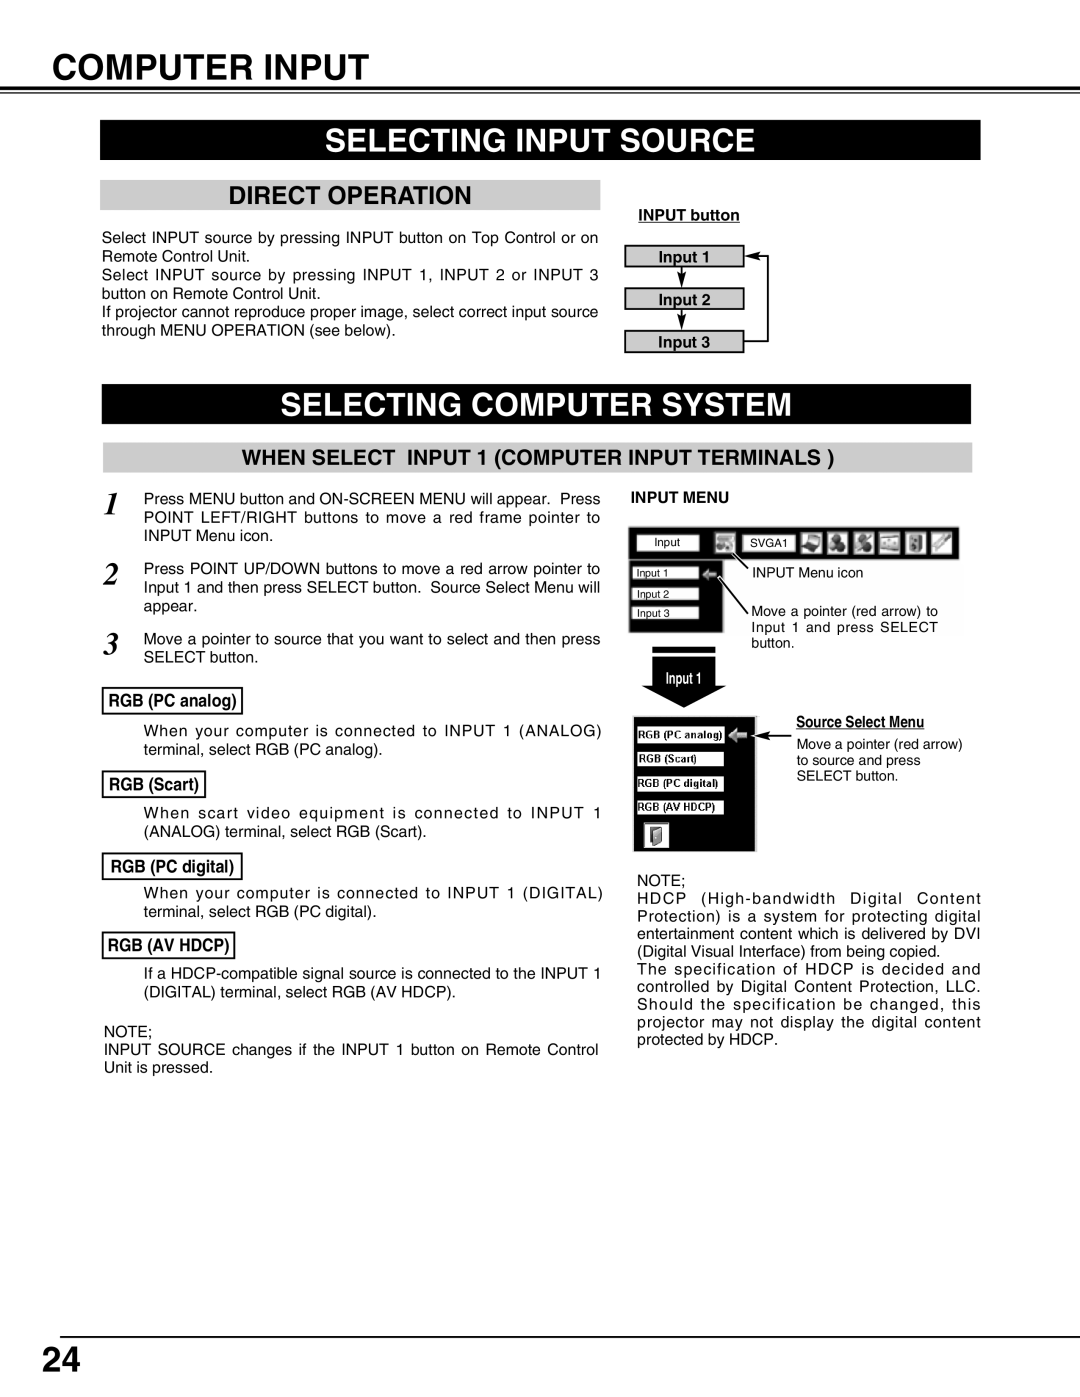 Eiki LC-W3 Computer Input, Selecting Input Source, Selecting Computer System, INPUT button Input Input Input, Input Menu 